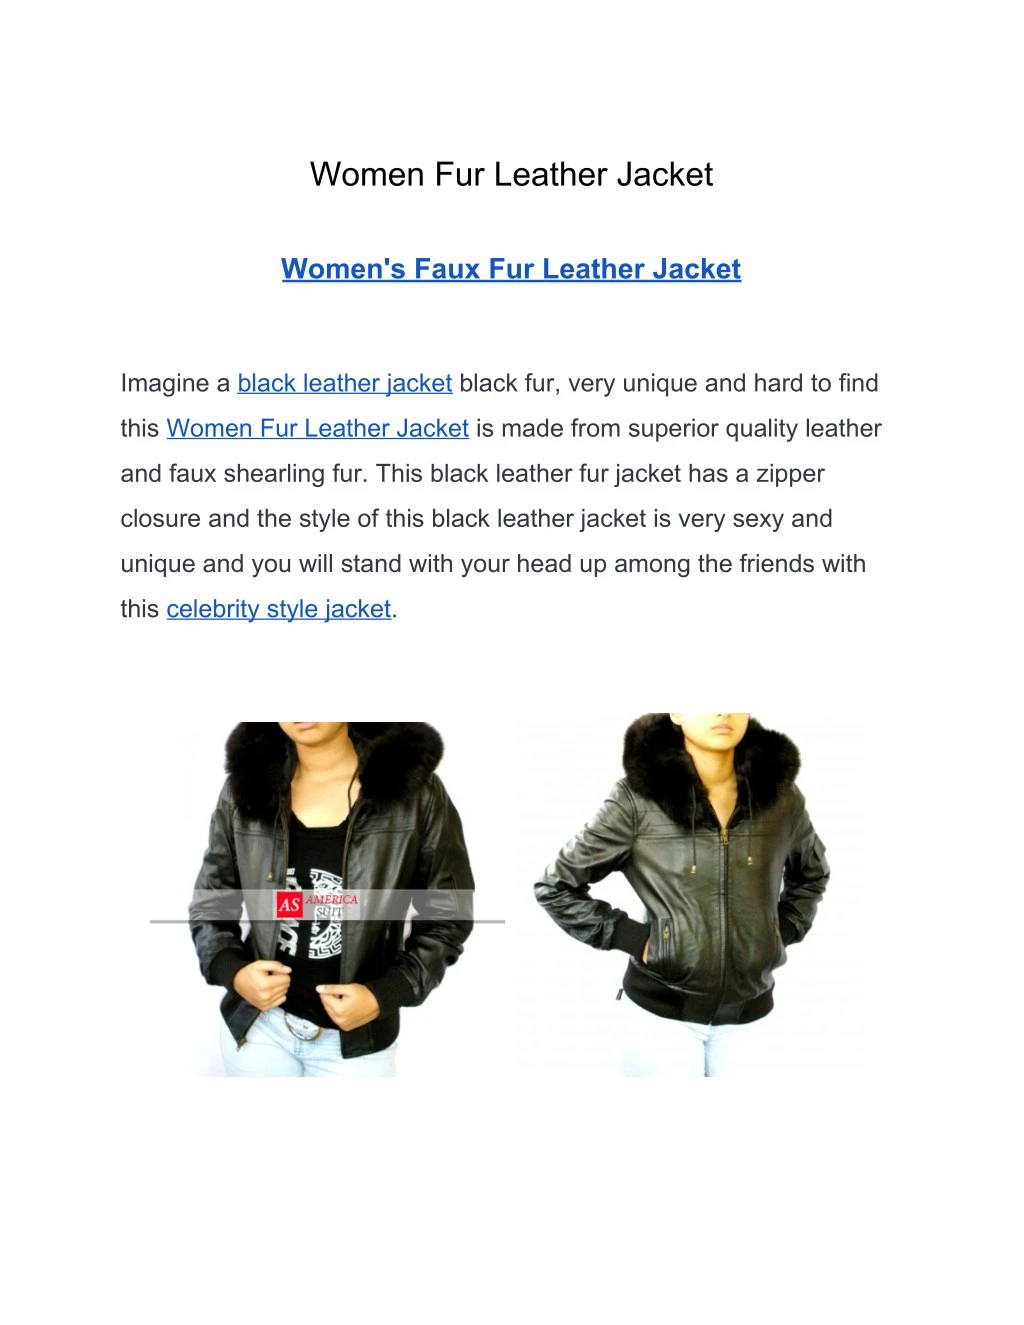 women fur leather jacket